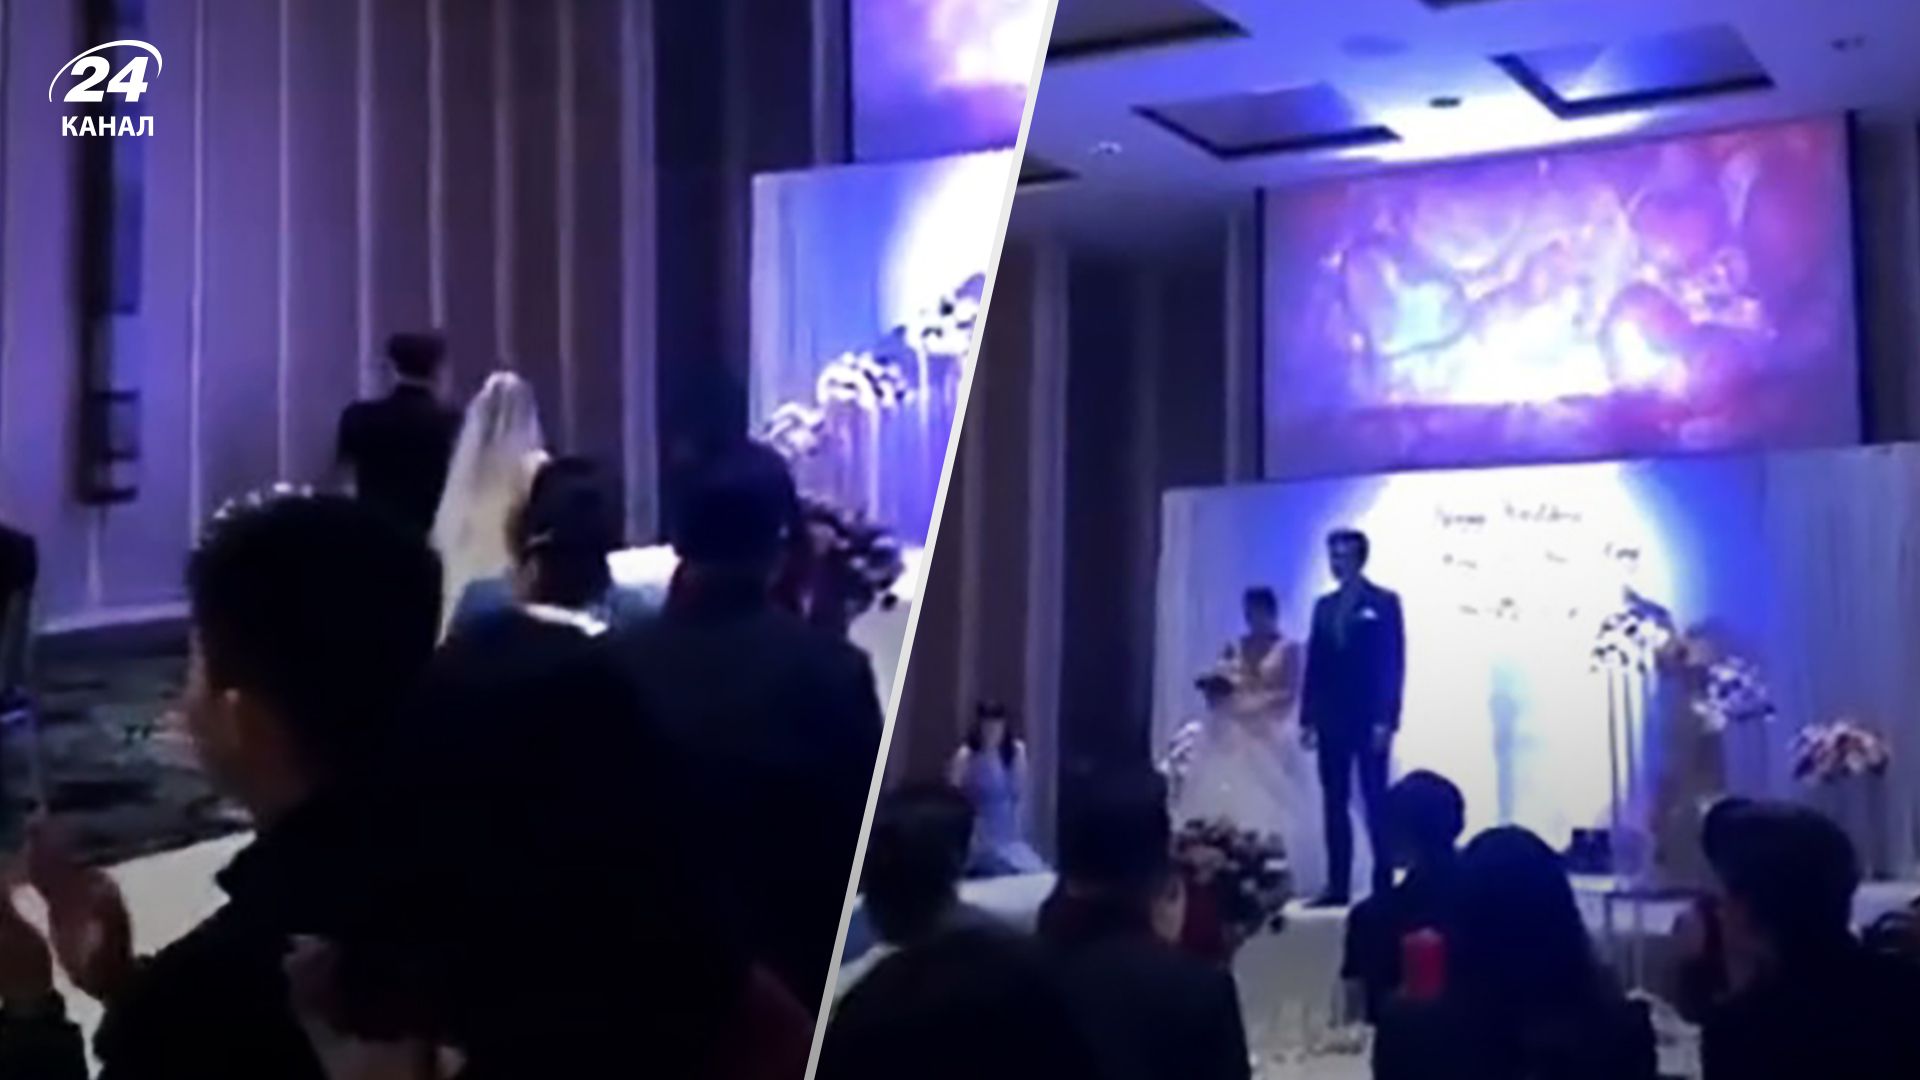 Измена перед свадьбой - мужчина показал видео измены невесты на их свадьбе